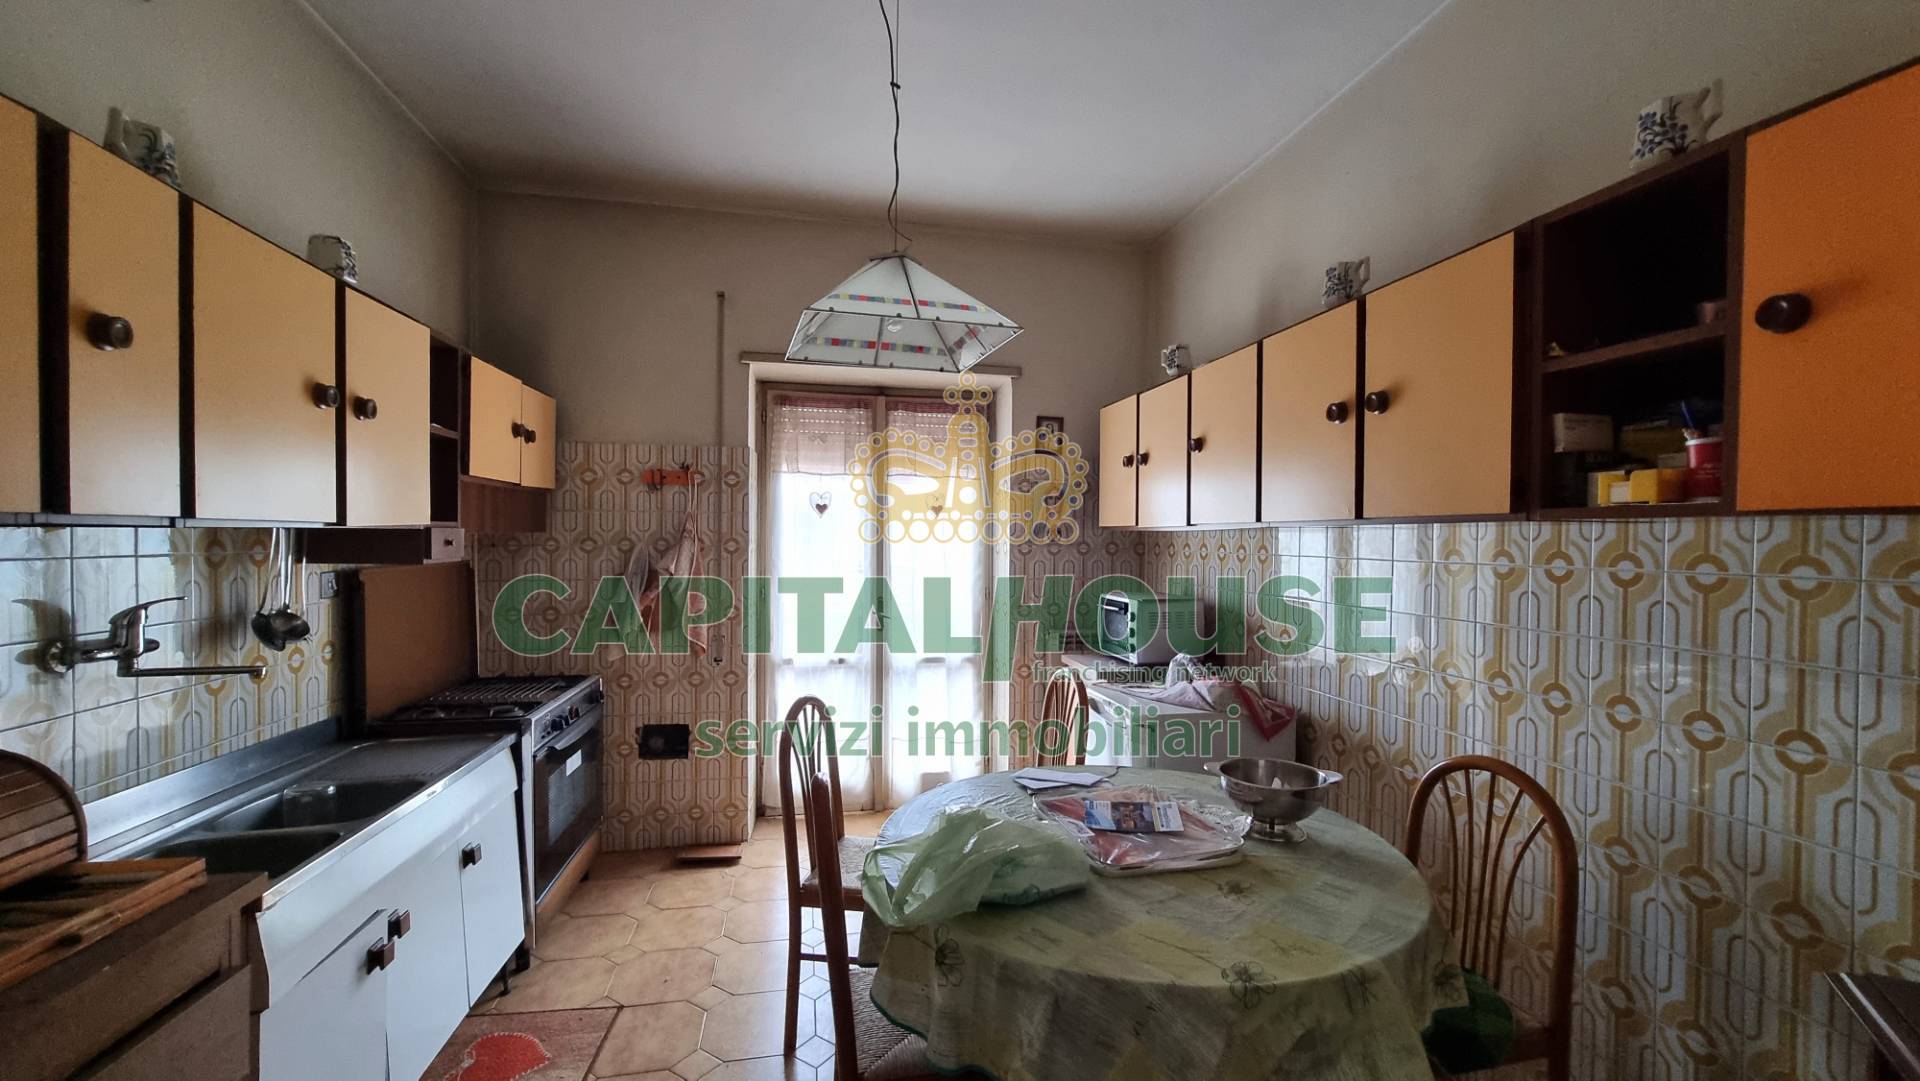 Appartamento in vendita a Casagiove, 5 locali, prezzo € 169.000 | PortaleAgenzieImmobiliari.it